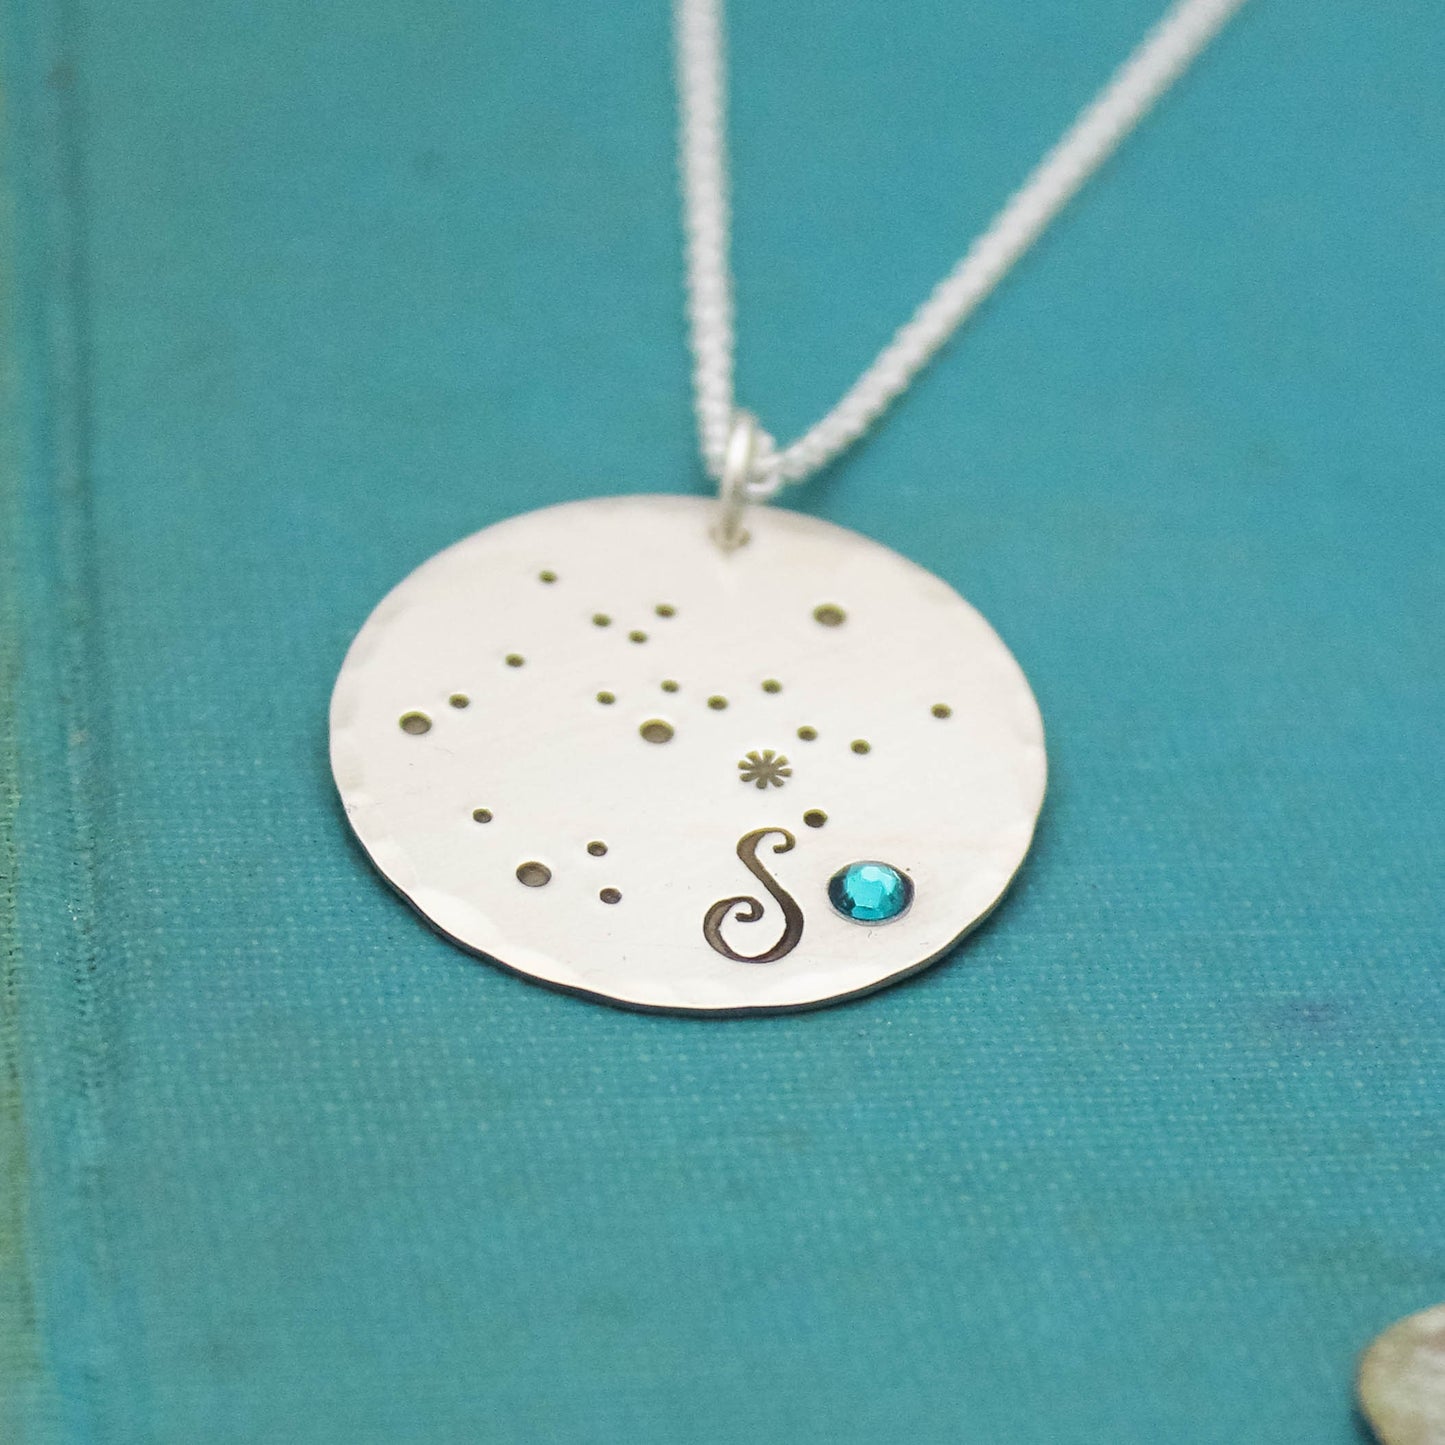 Zodiac Constellation Birthstone Necklace, Sterling Silver December Birthstone Necklace, Birthday Gift, Constellation Birthstone Jewelry